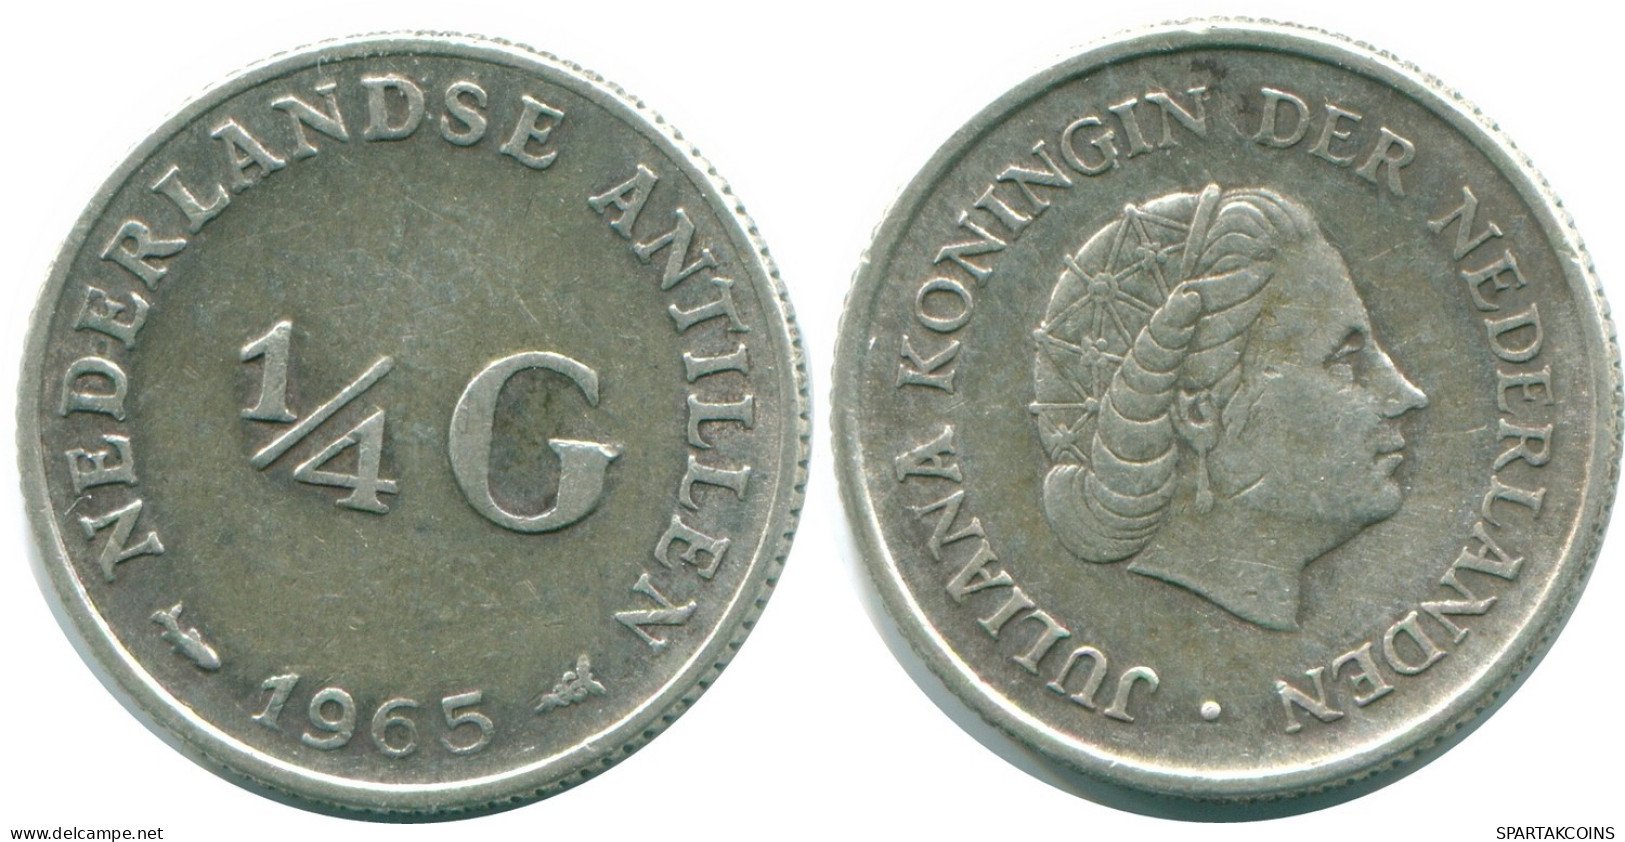 1/4 GULDEN 1965 NIEDERLÄNDISCHE ANTILLEN SILBER Koloniale Münze #NL11398.4.D.A - Niederländische Antillen